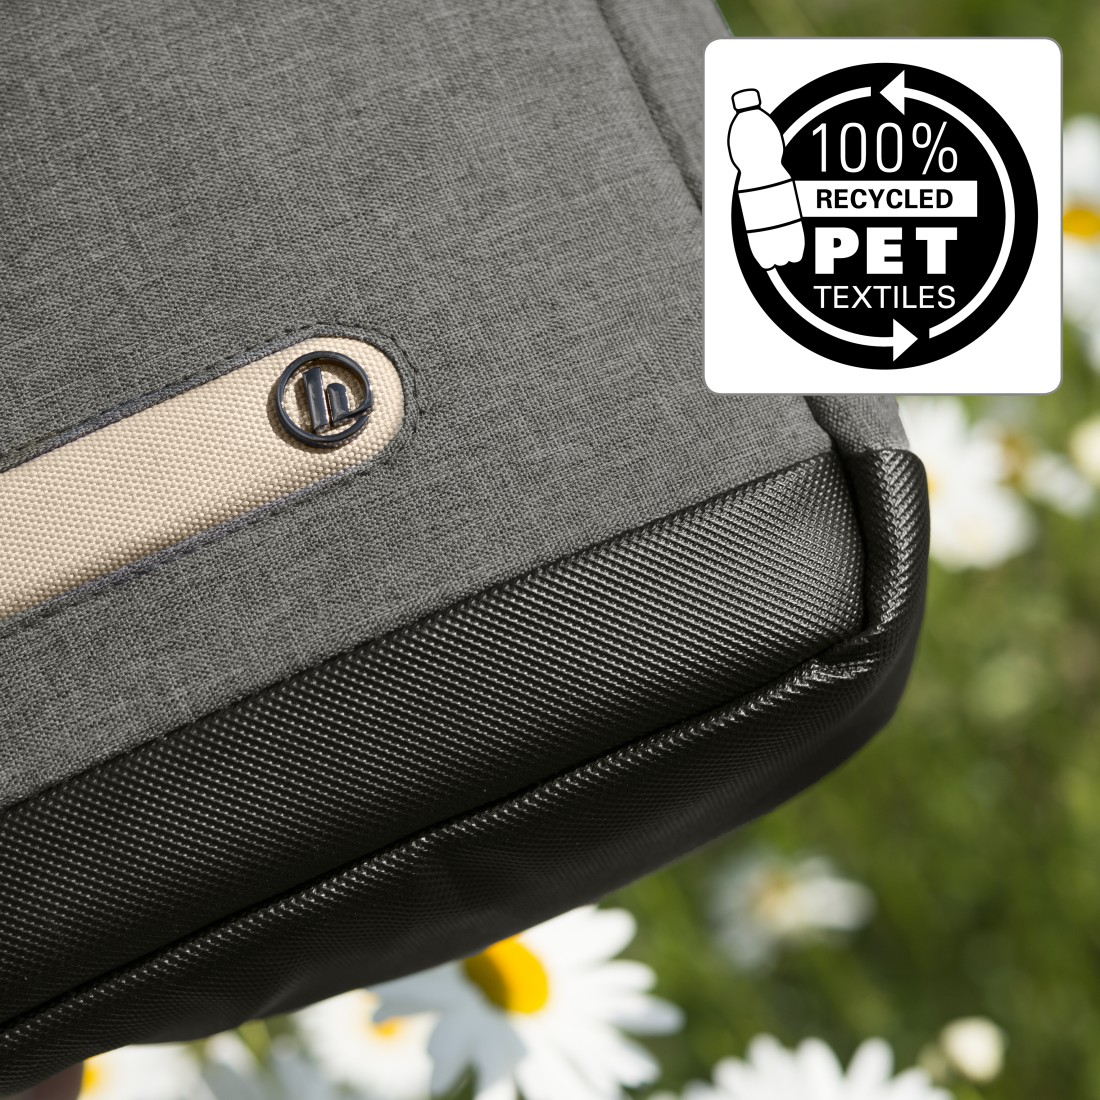 HAMA Terra 100% Universal Grau Recyceltem für aus 15.6 Polyester, Notebooktasche Umhängetasche Zoll